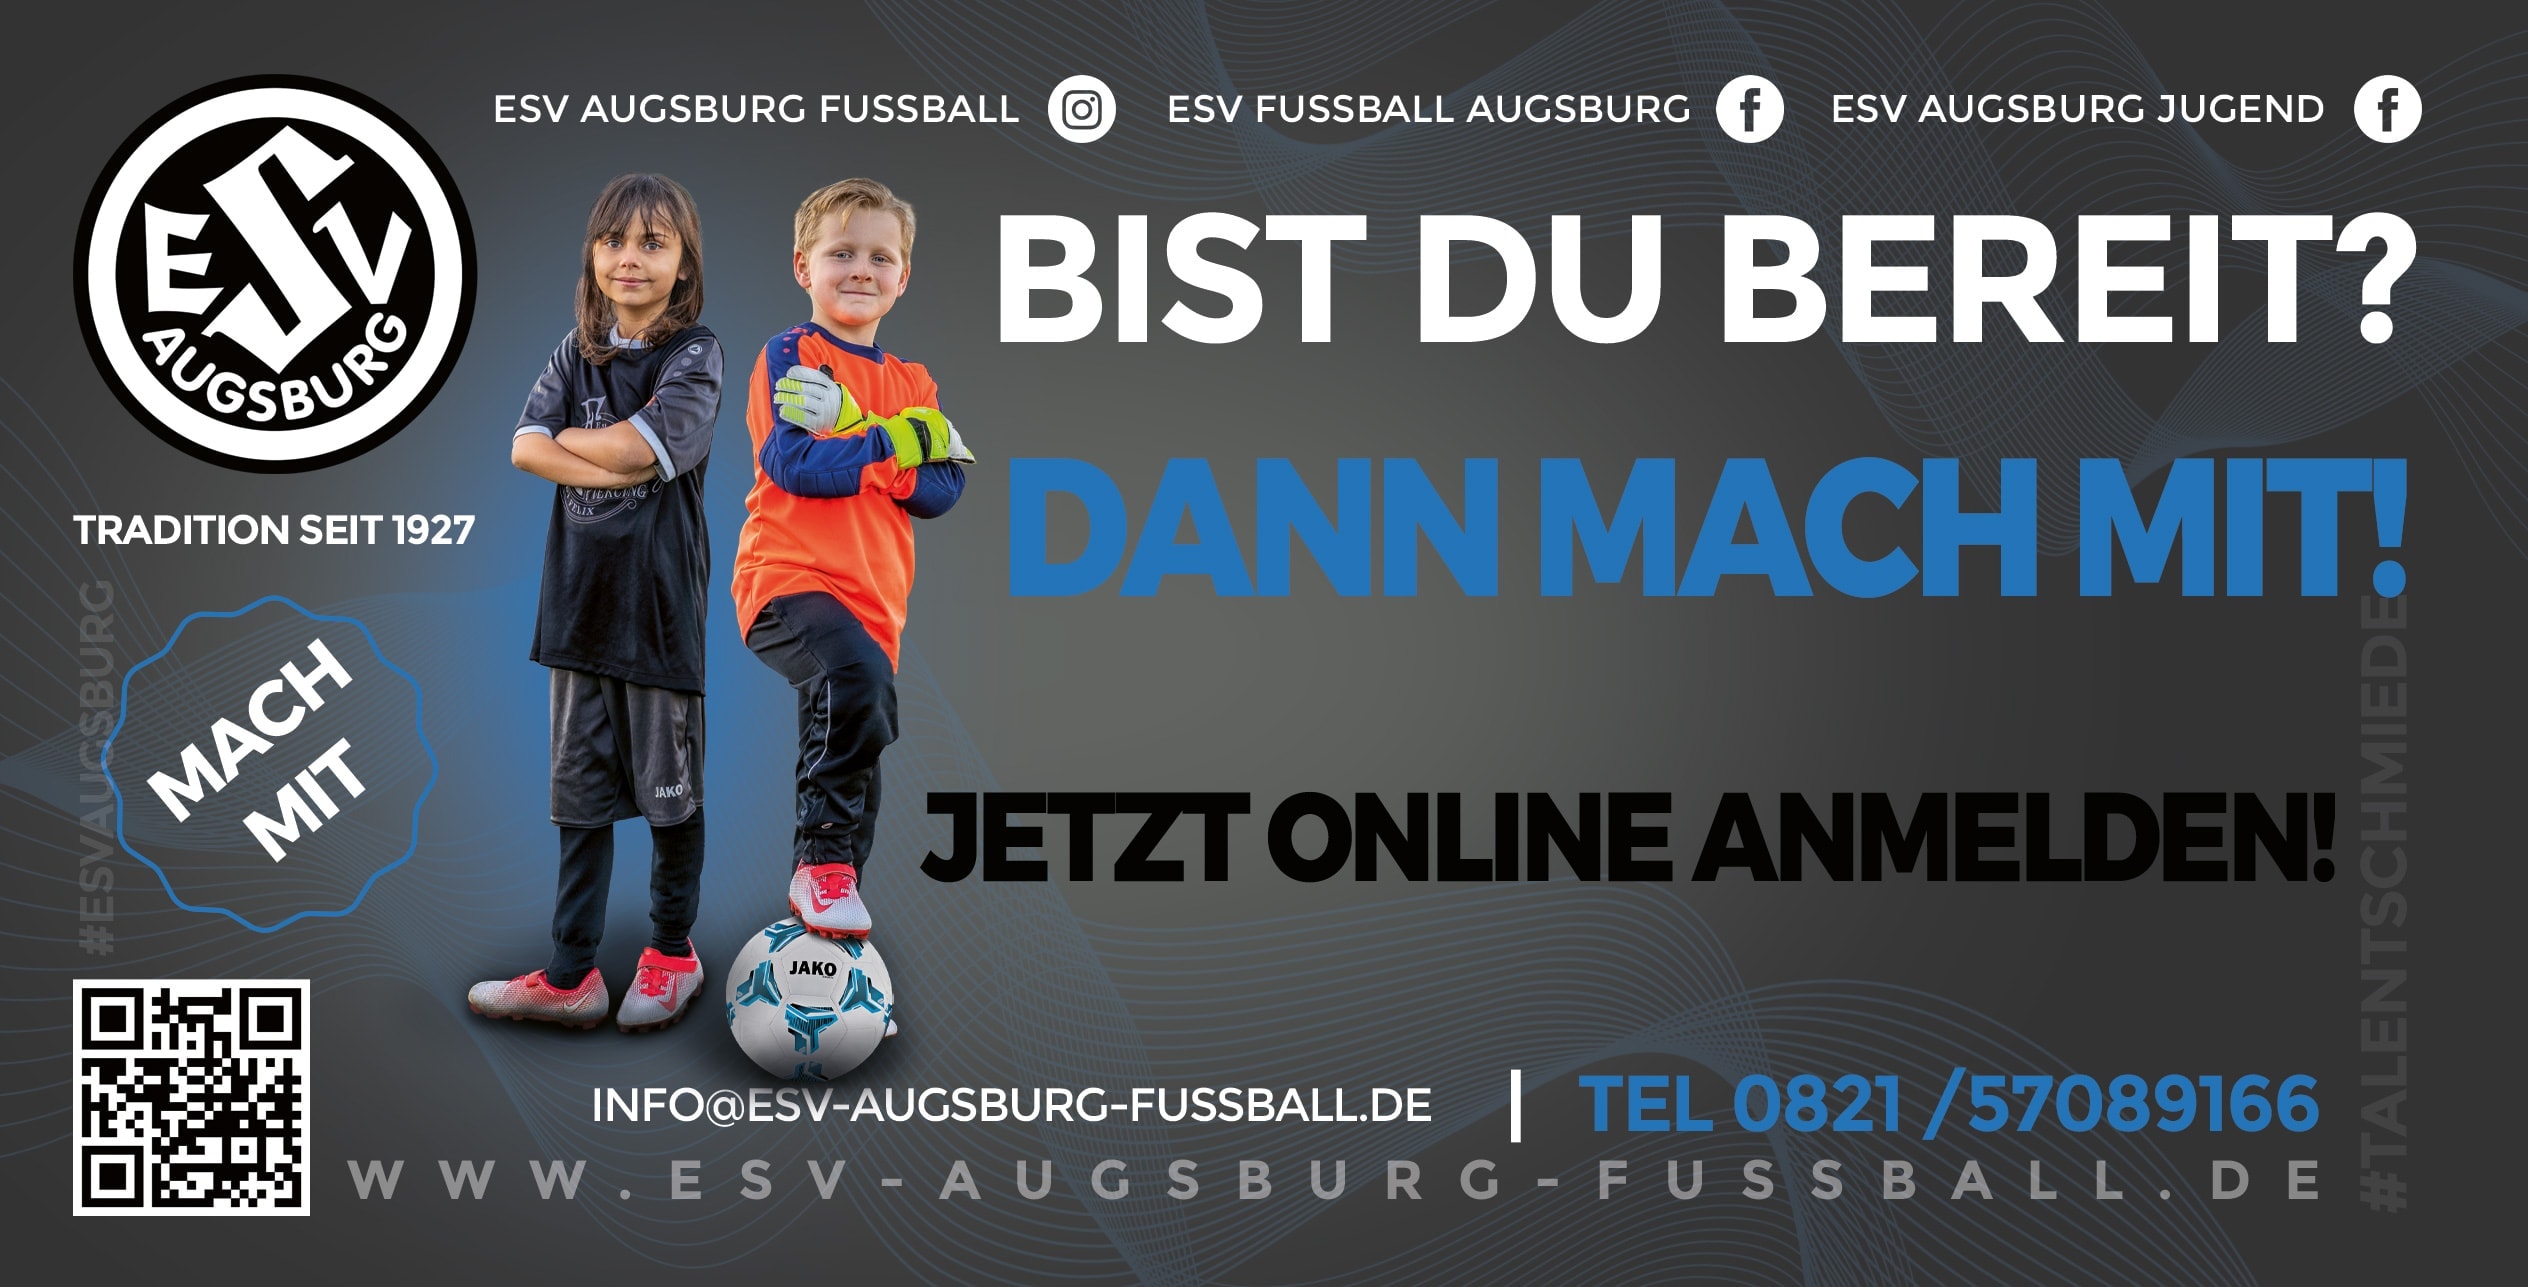 ESV Augsburg Fussball Werbung and Banner